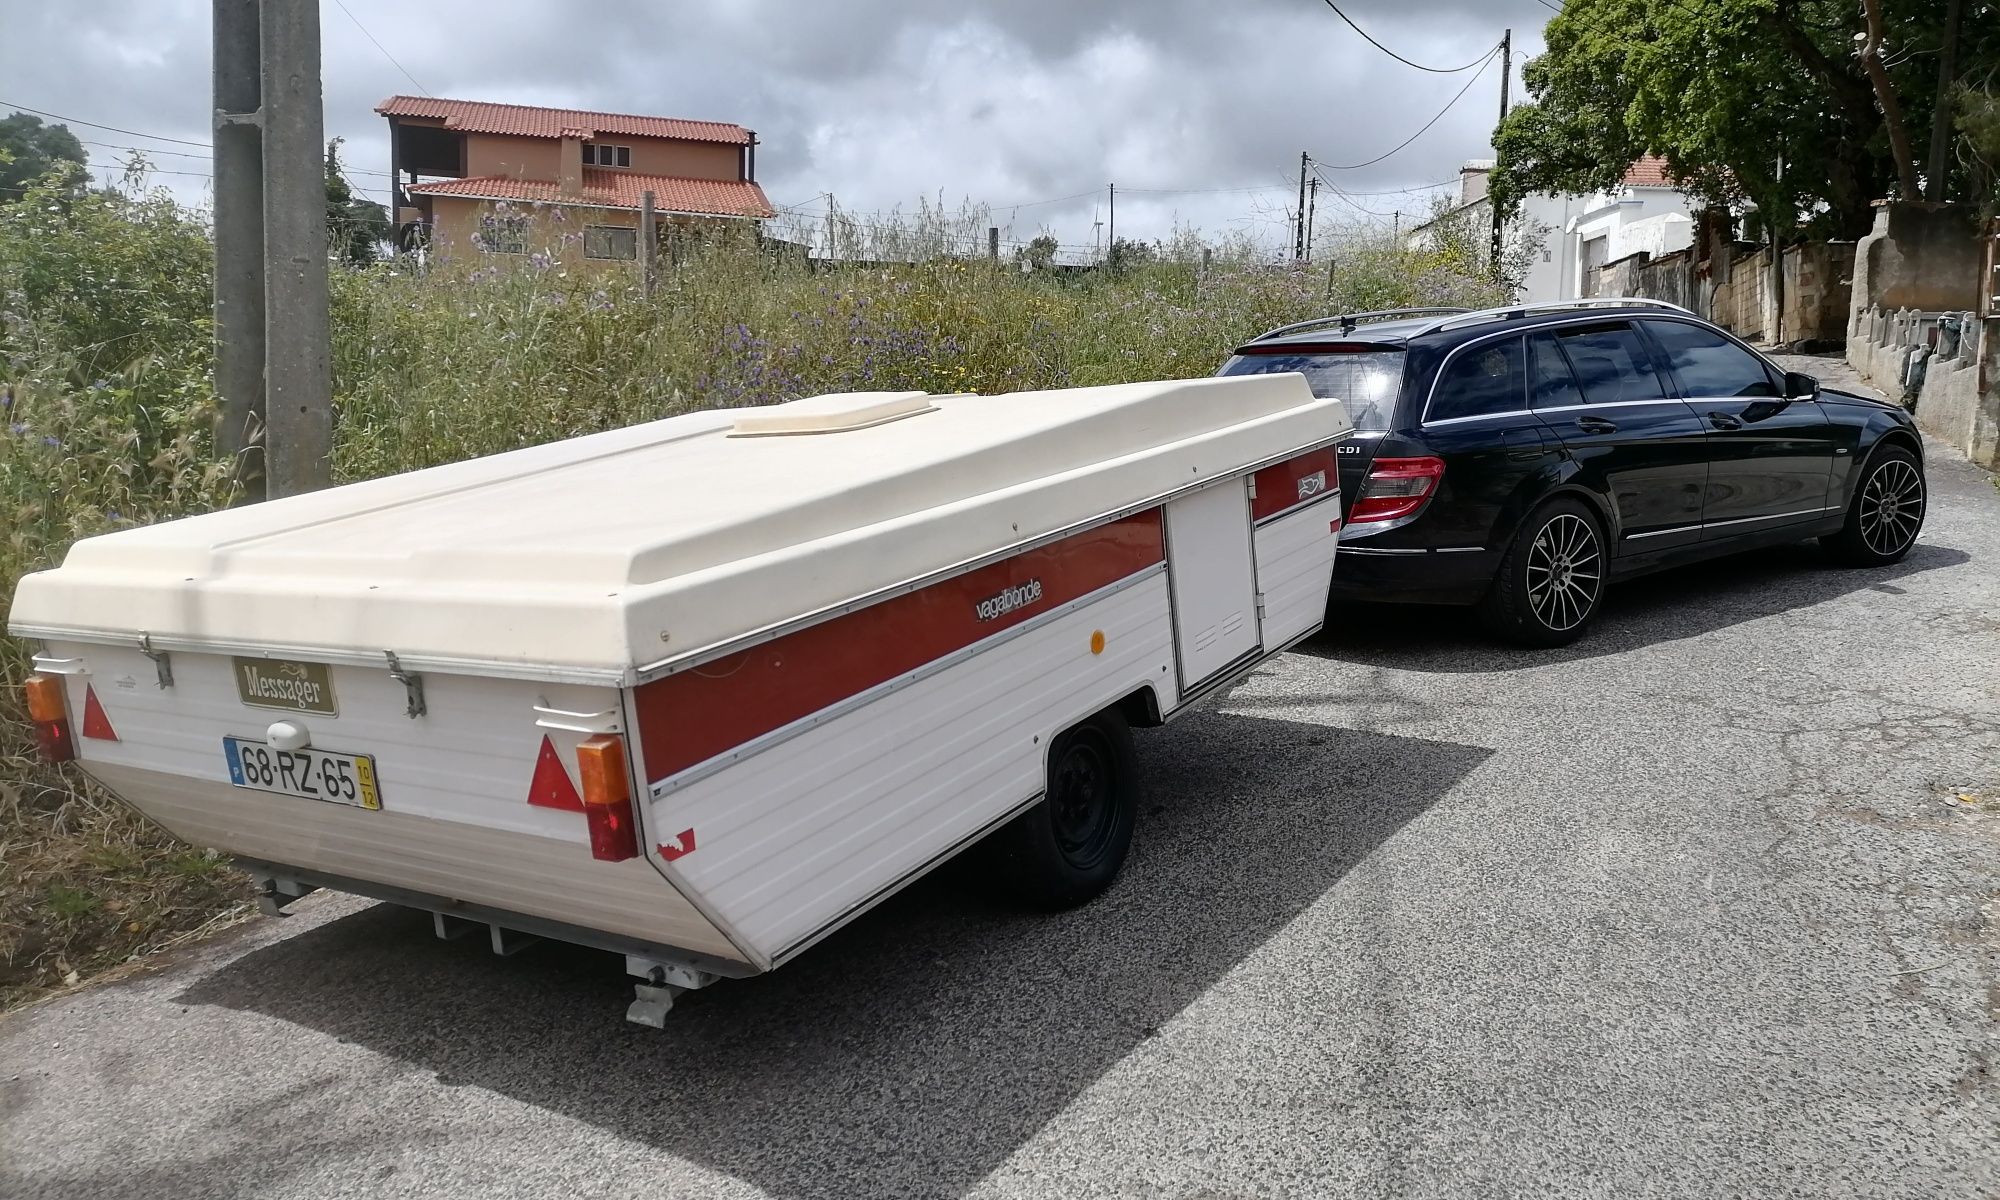 Caravana rara rebatível 400kg pode rebocar com carta b